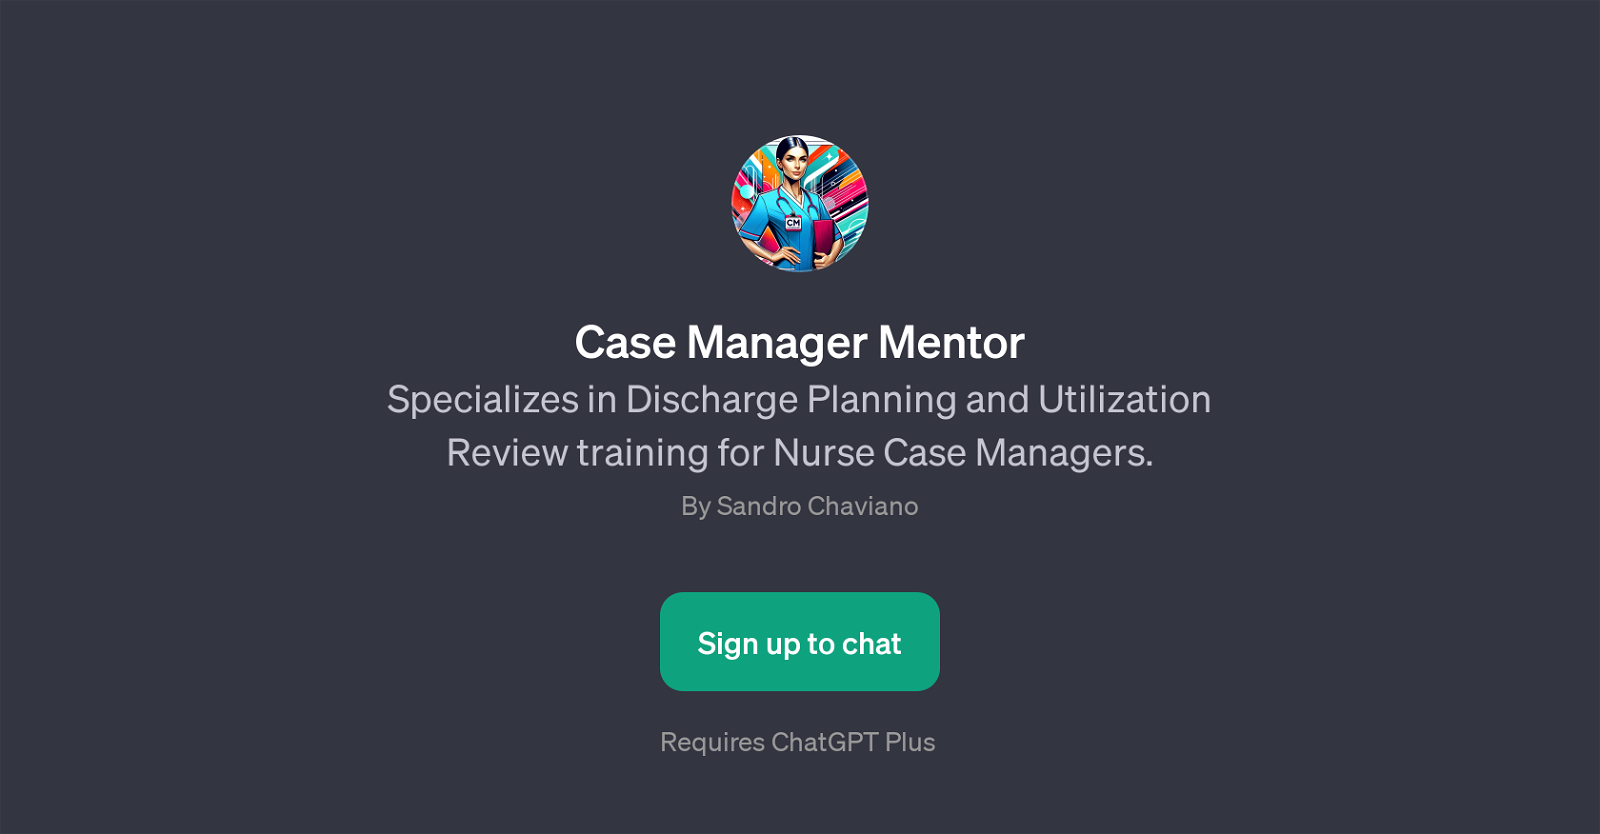 Case Manager Mentor website